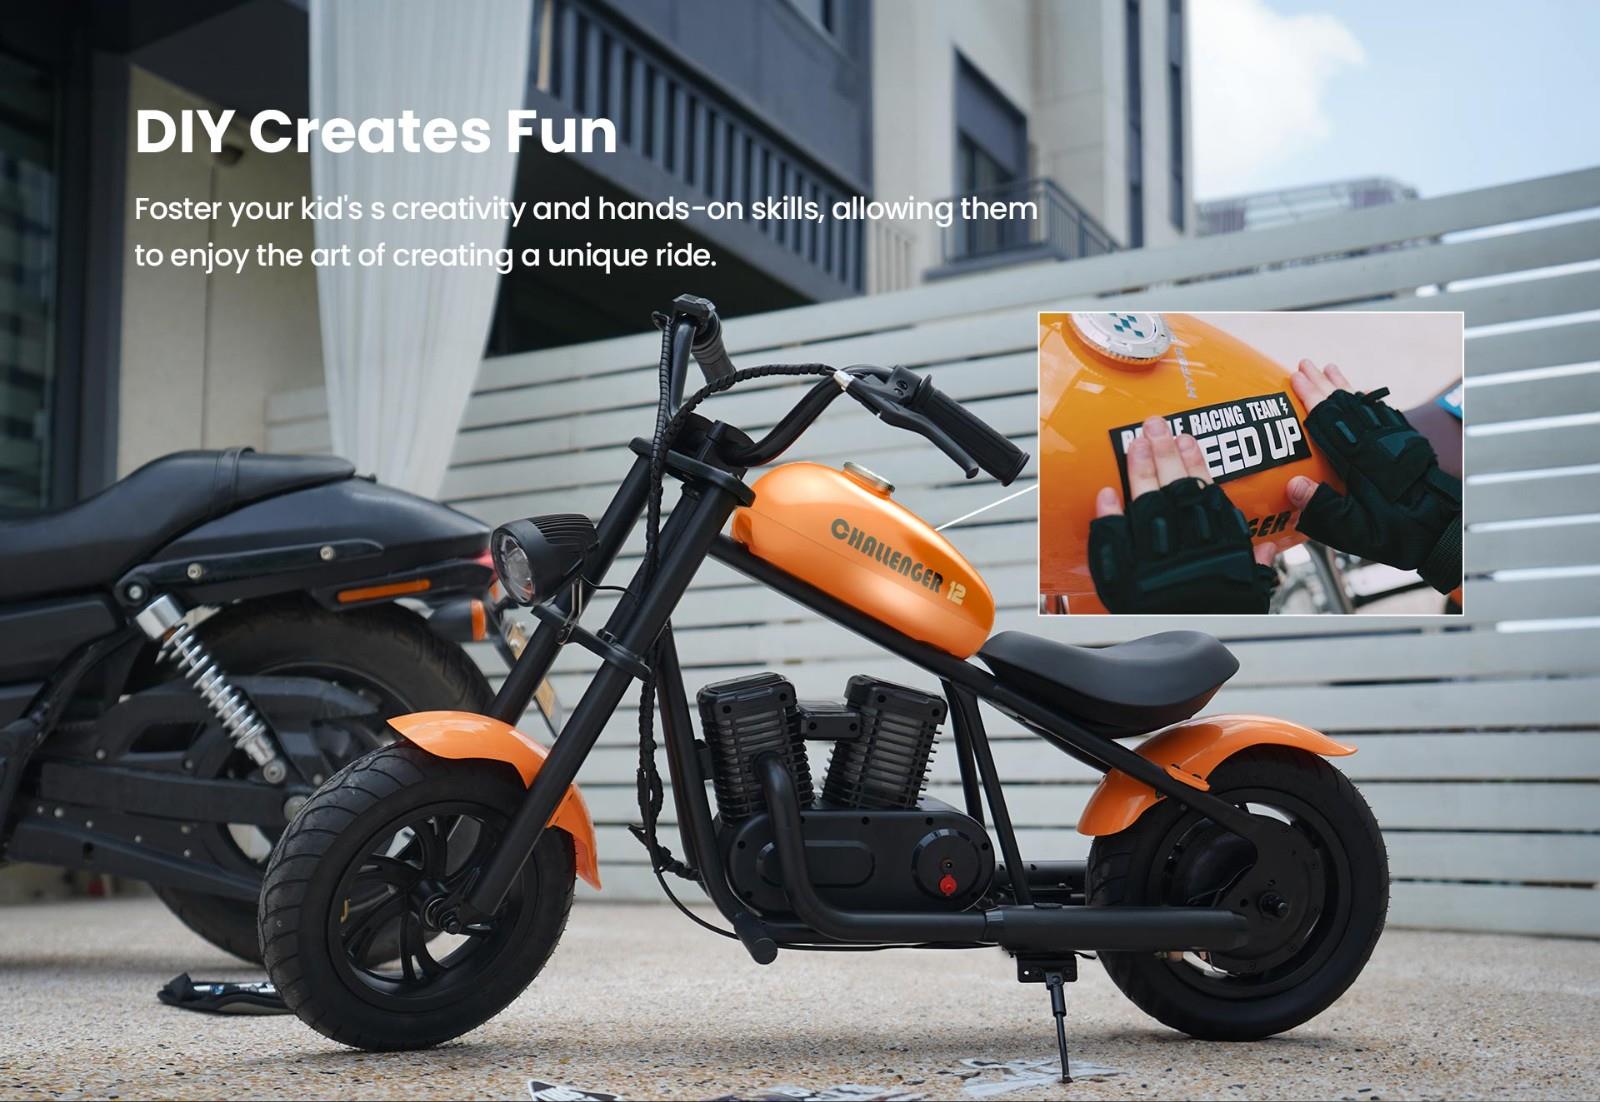 Hyper GOGO Challenger 12 Plus Elektro-Motorrad für Kinder, 12 x 3 Reifen, 160W, 5.2Ah, Lautsprecher - Schwarz